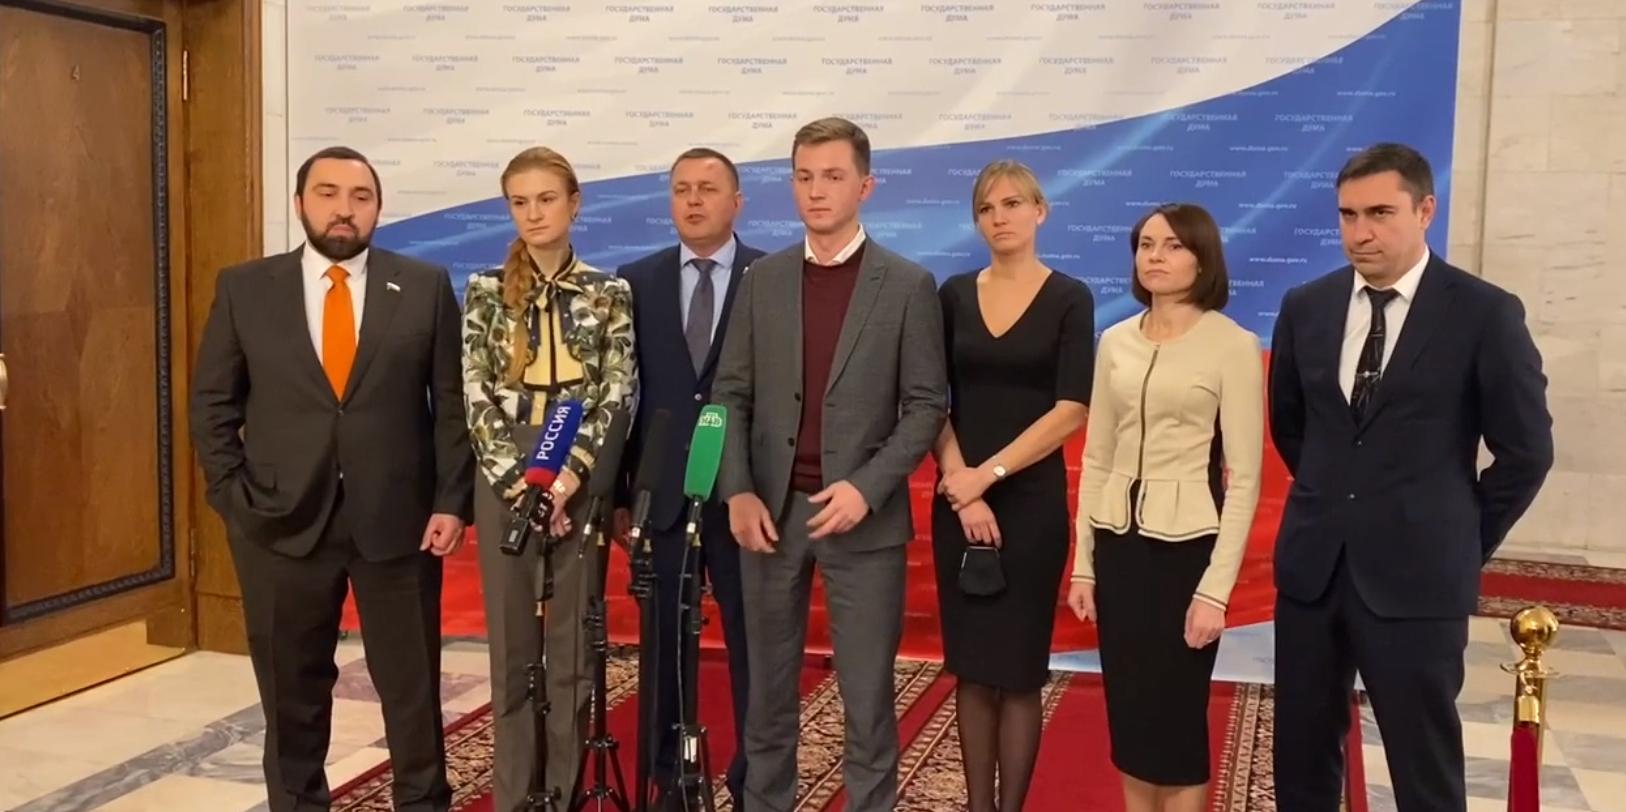 Глава комитета Думы Метелев призвал депутатов присоединиться к акции "Мы вместе"